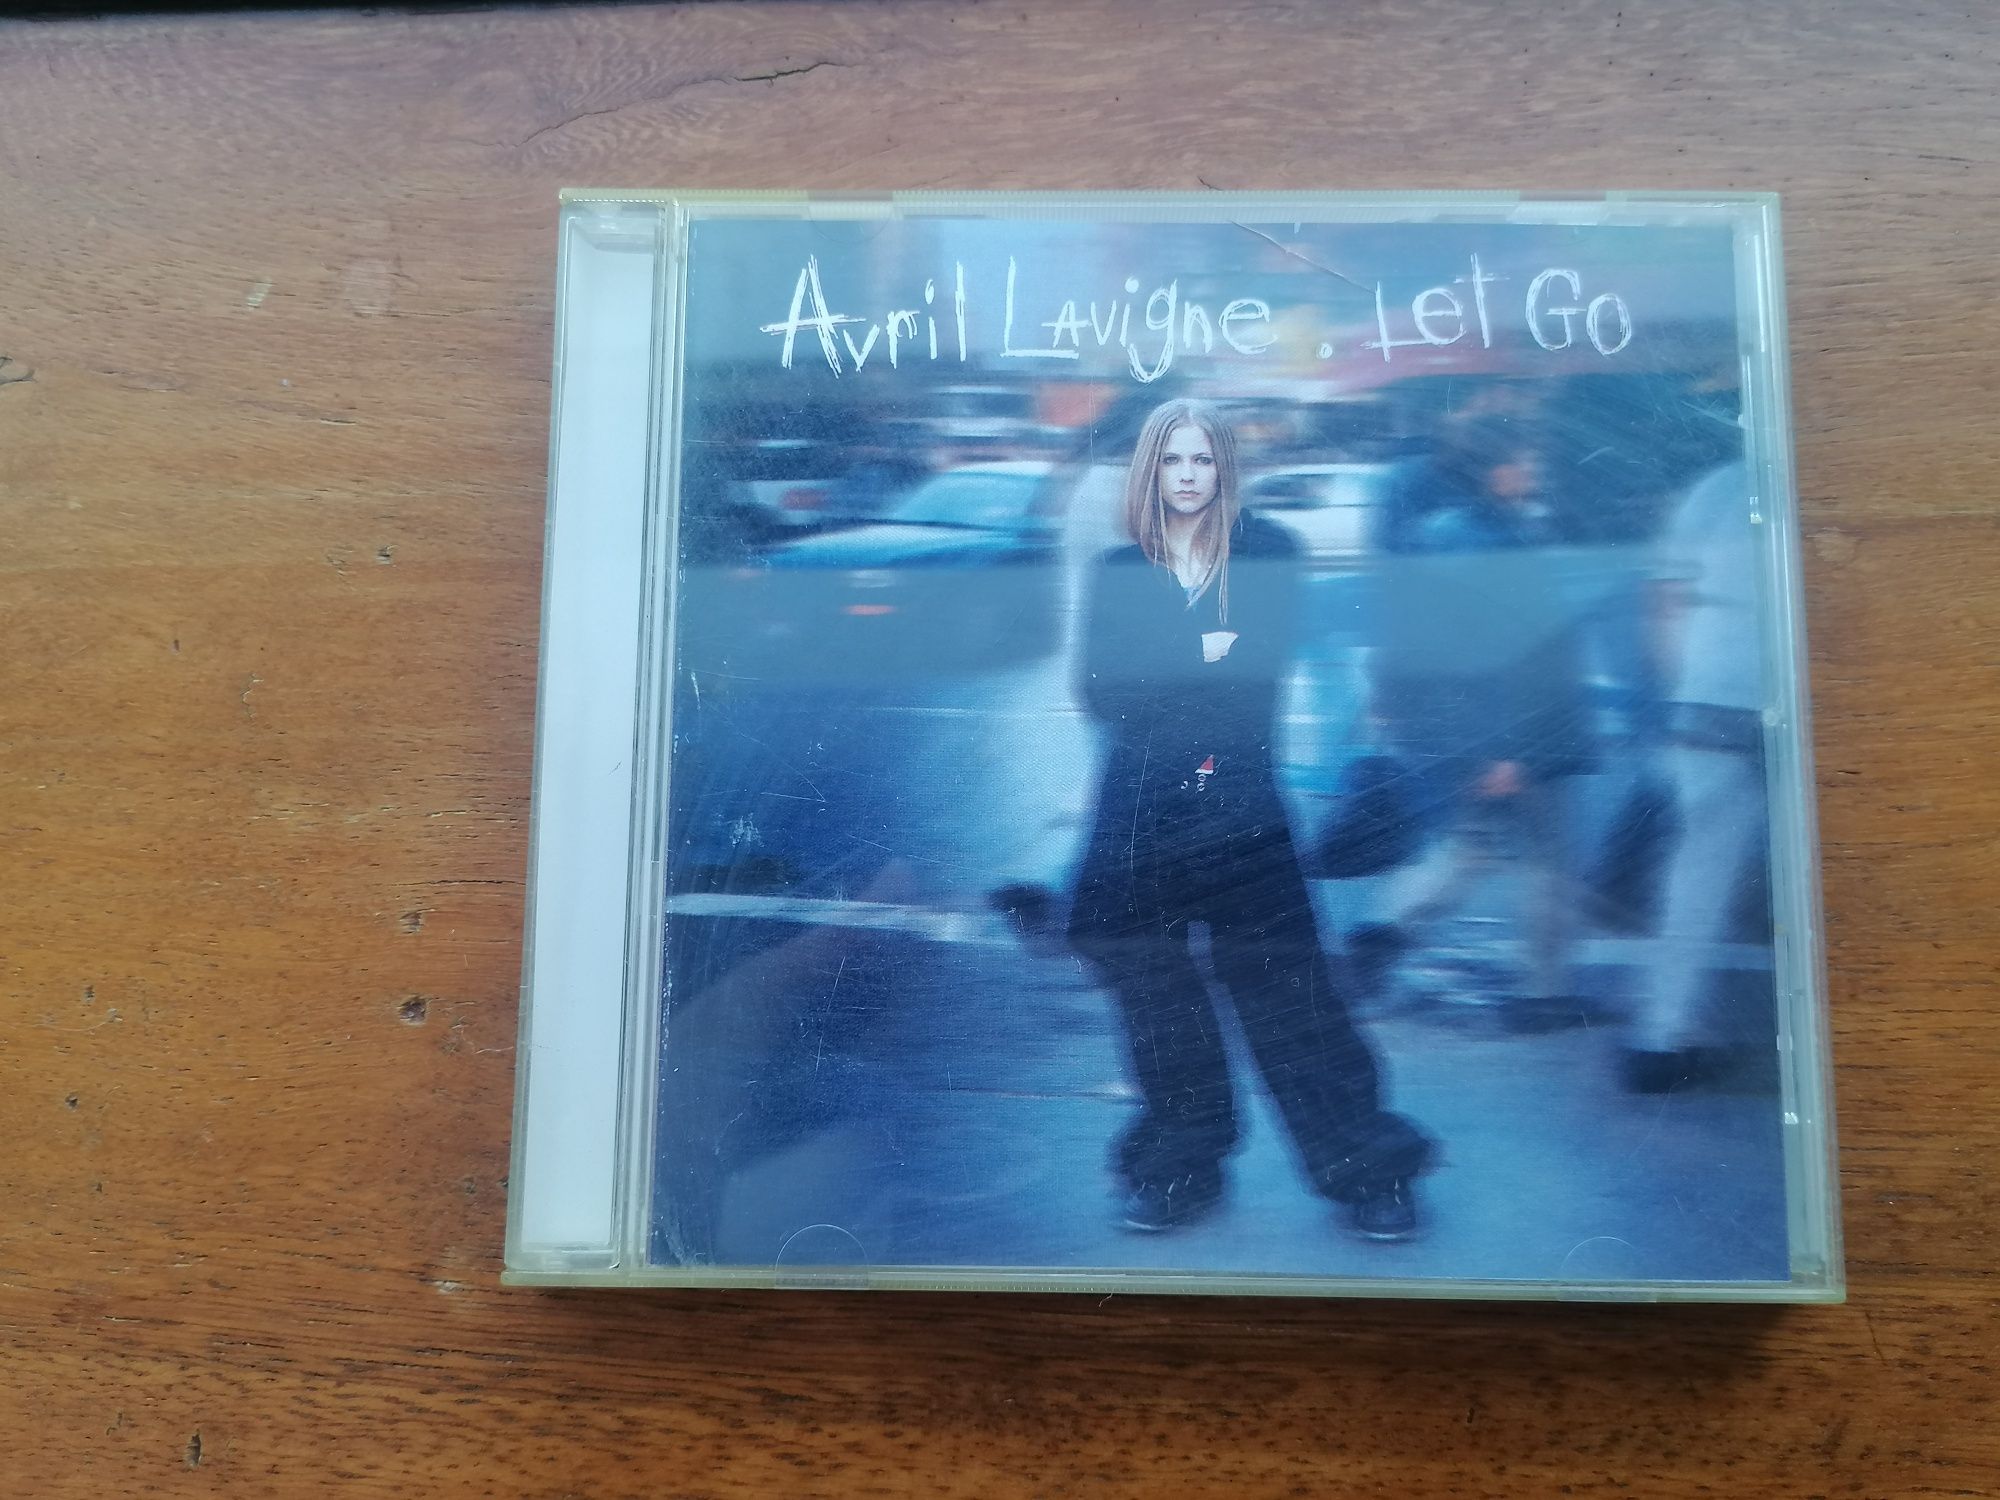 CD Avril Lavigne "Let go"